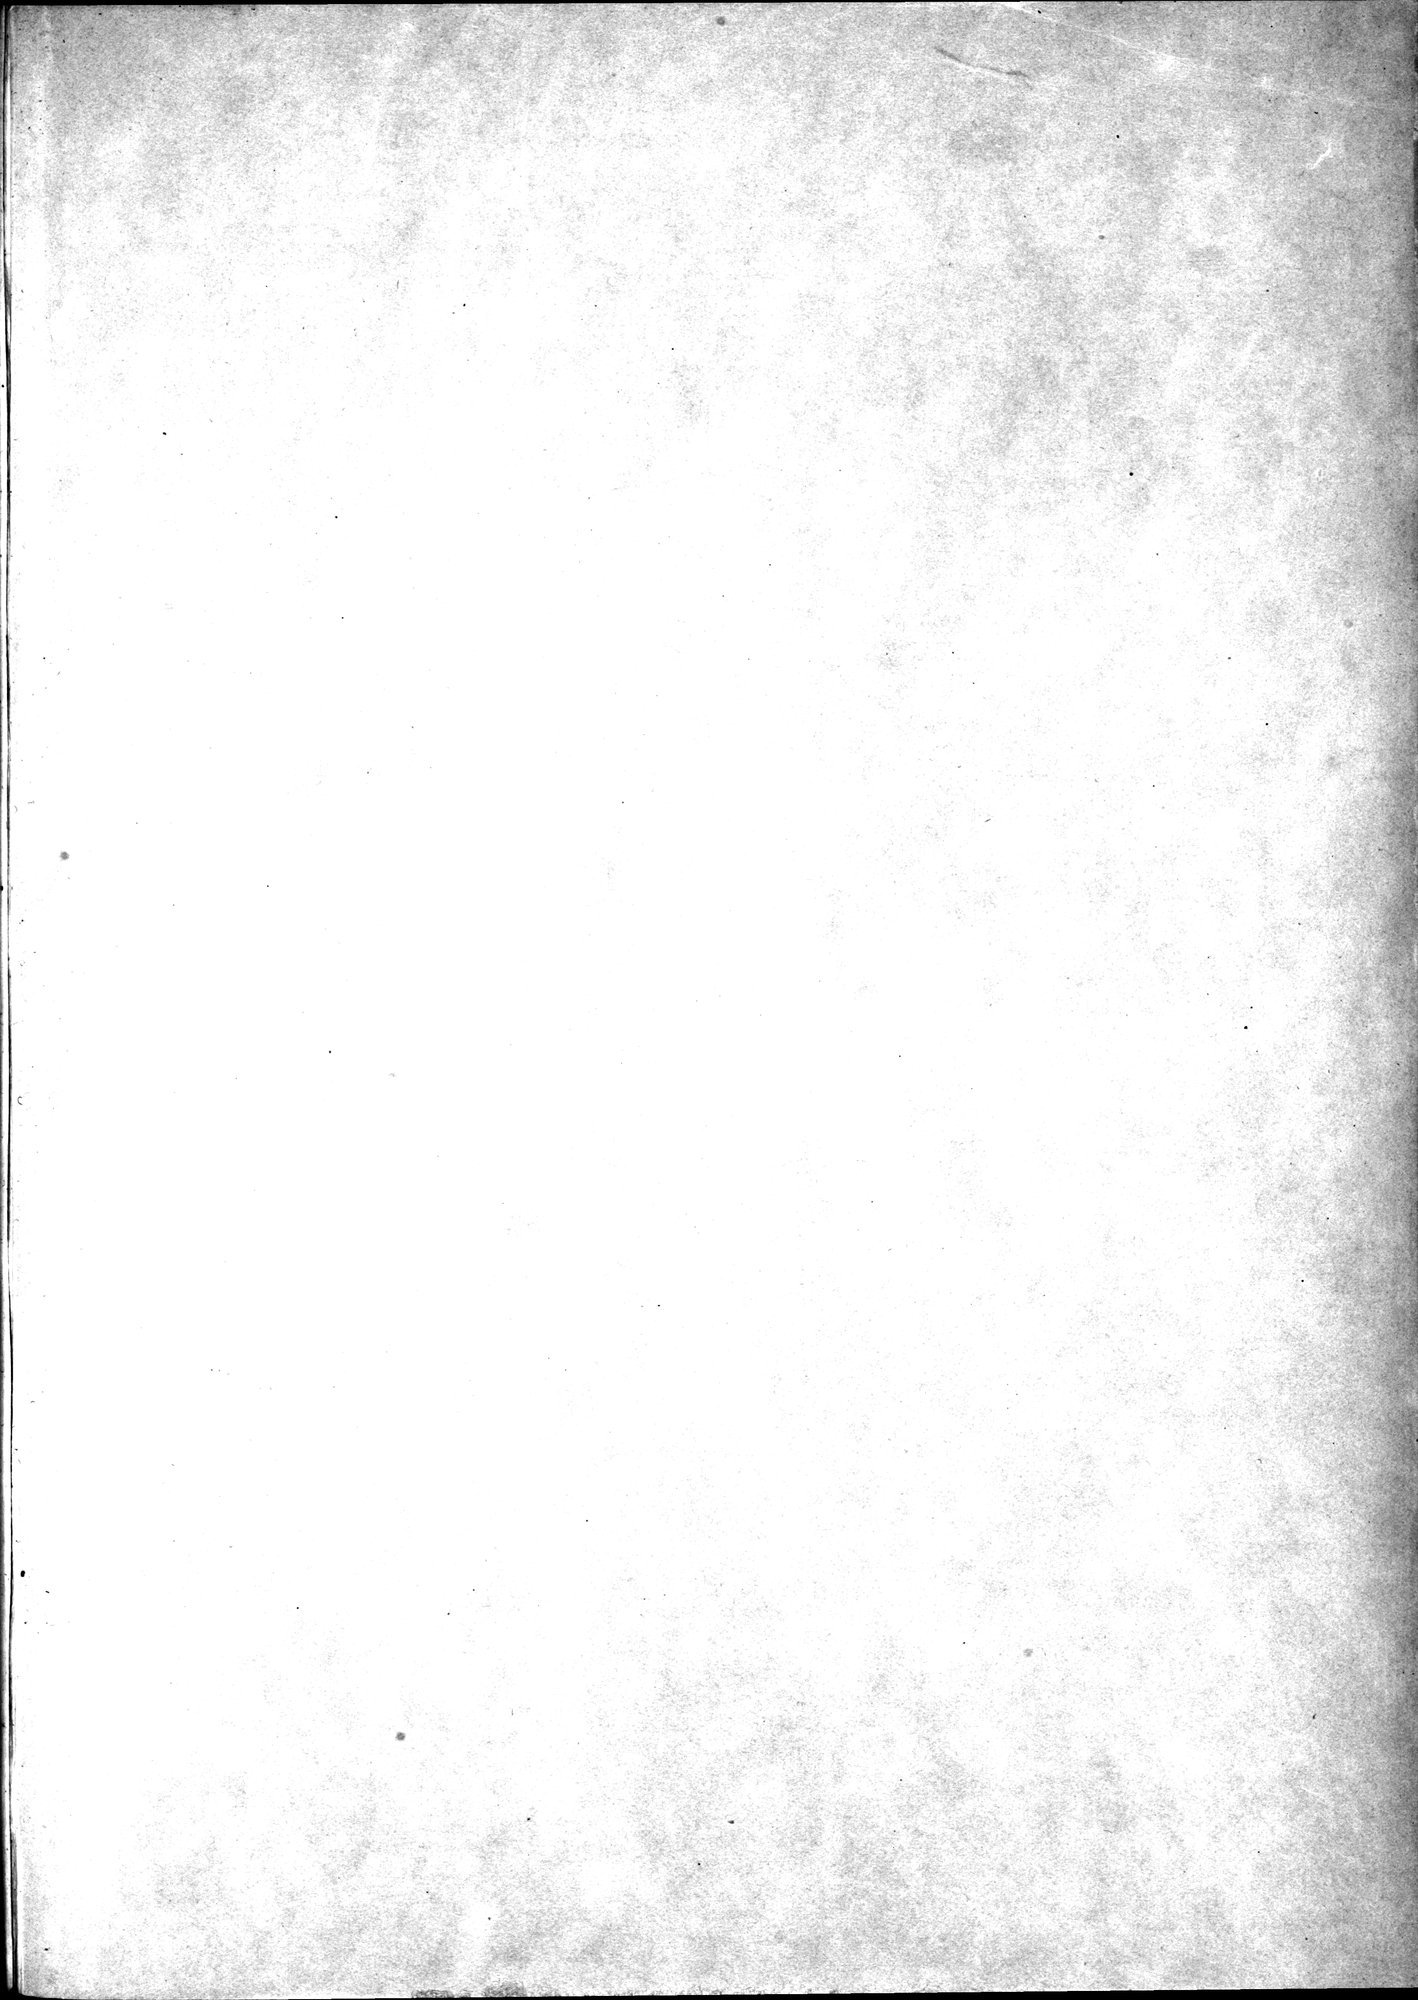 Kunstgeschichte der Seidenweberei : vol.1 / Page 267 (Grayscale High Resolution Image)